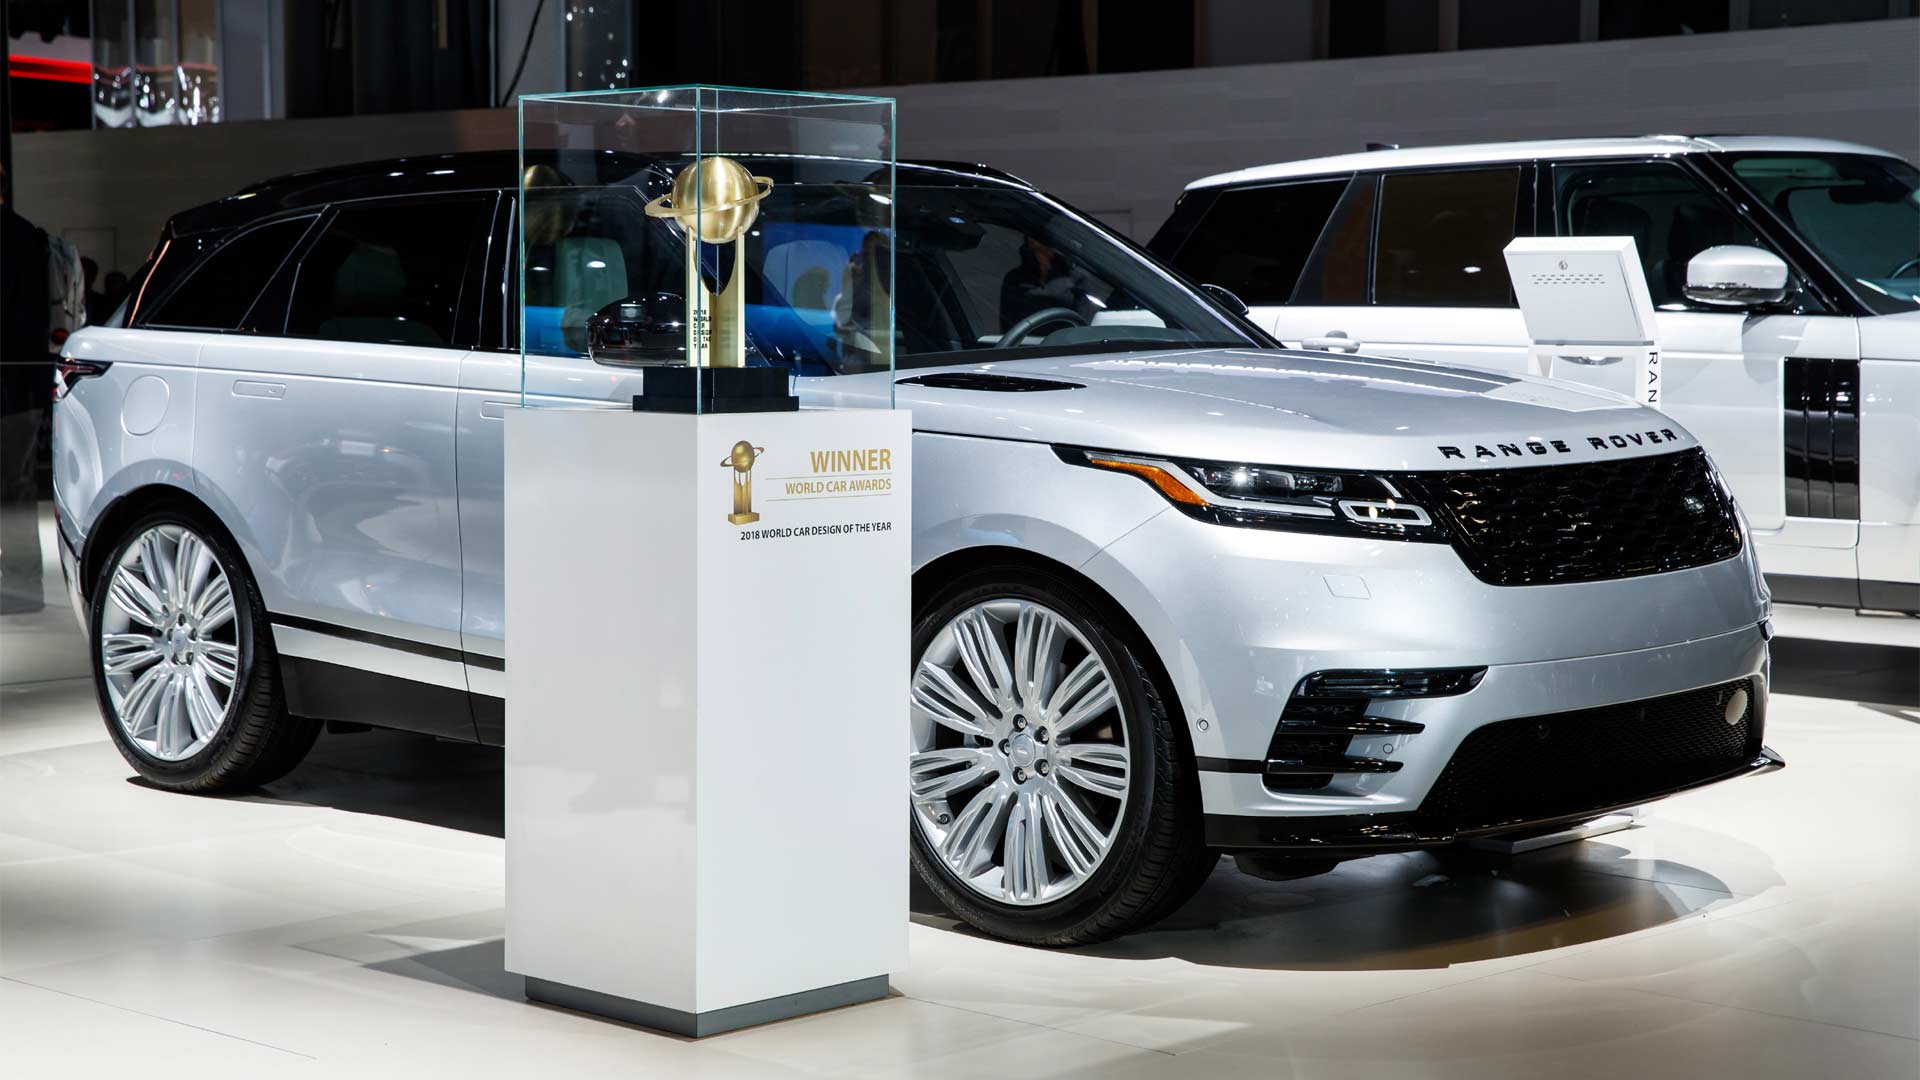 Range-Rover-Velar-named-World-Car-Design-of-the-Year-2018_2